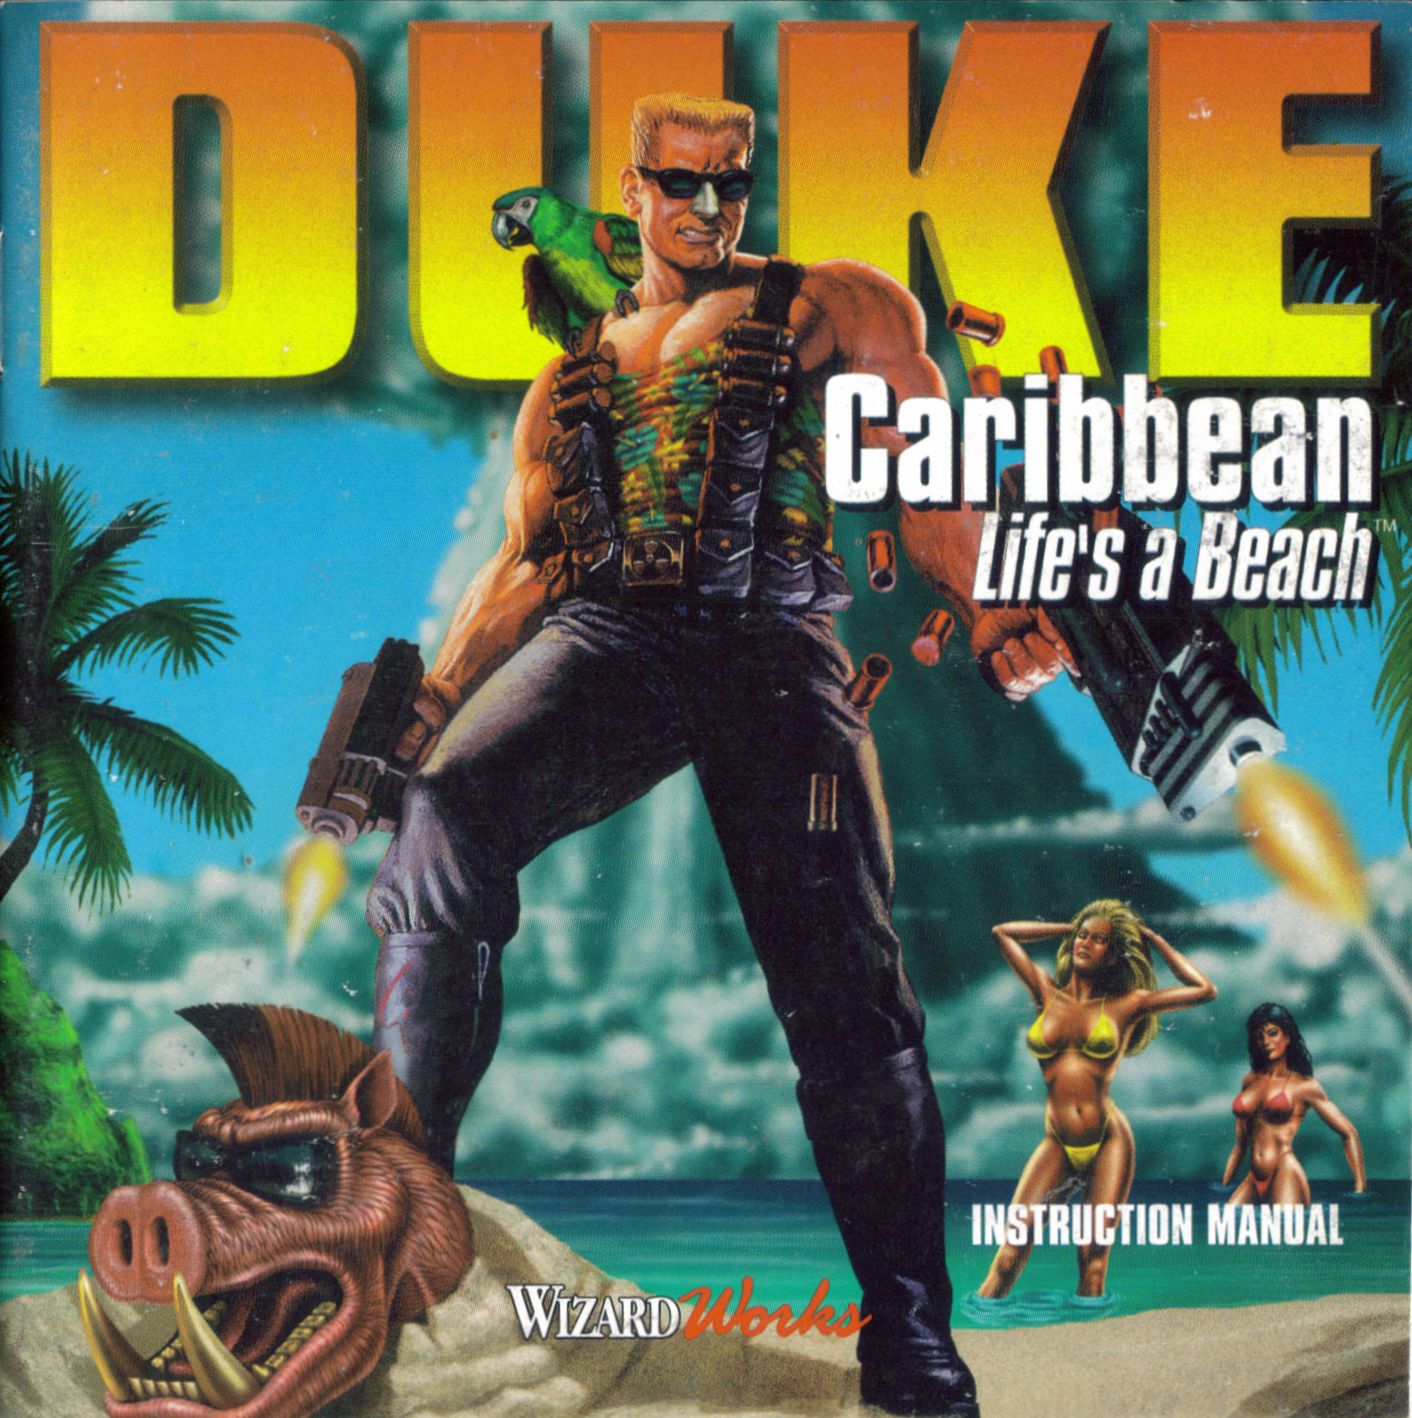 duke-caribbean-lifes-a-beach-854825.jpg